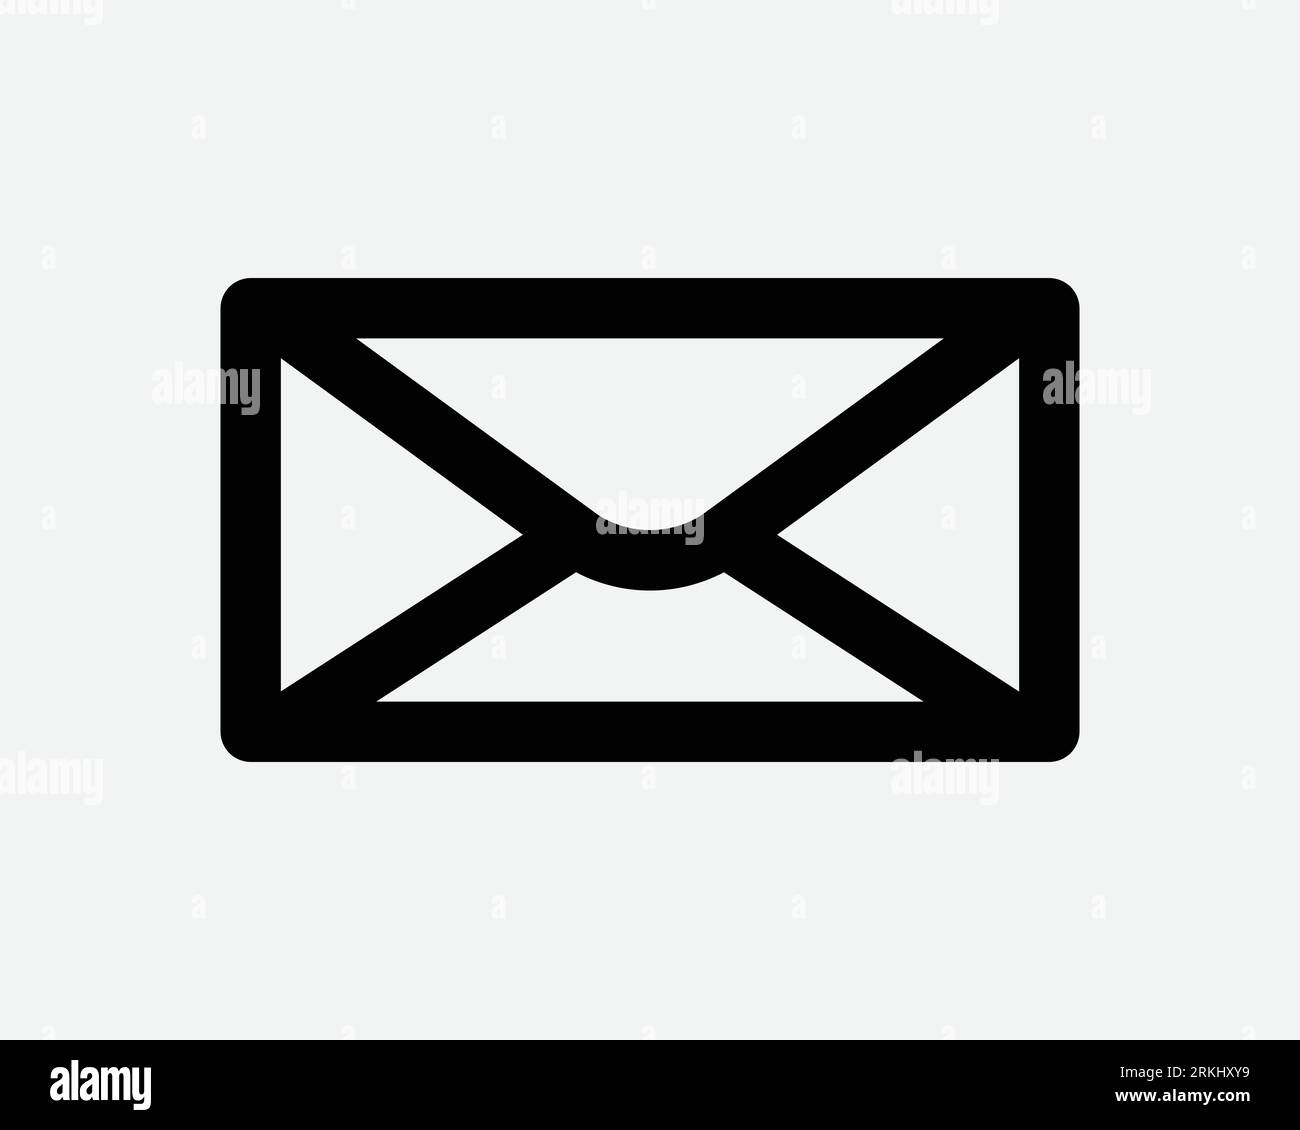 Mail icône lettre enveloppe courrier message communication Email postal Envoyer Post Noir blanc forme vecteur Clipart Illustration graphique Illustration graphique symbole d'illustration Illustration de Vecteur